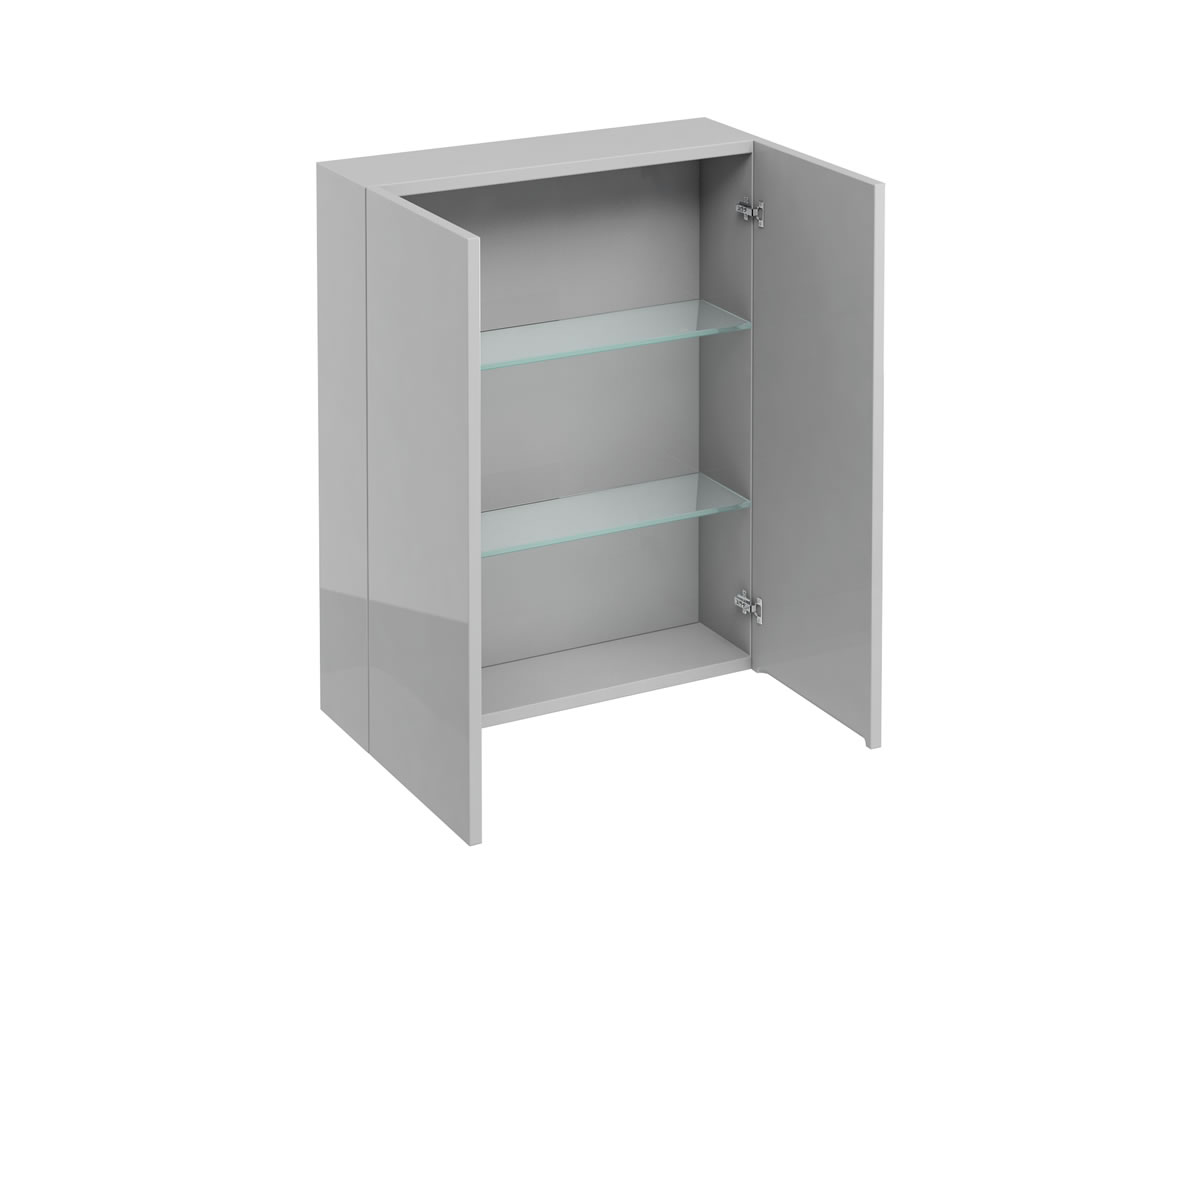 600 double door wall cabinet - Light Grey